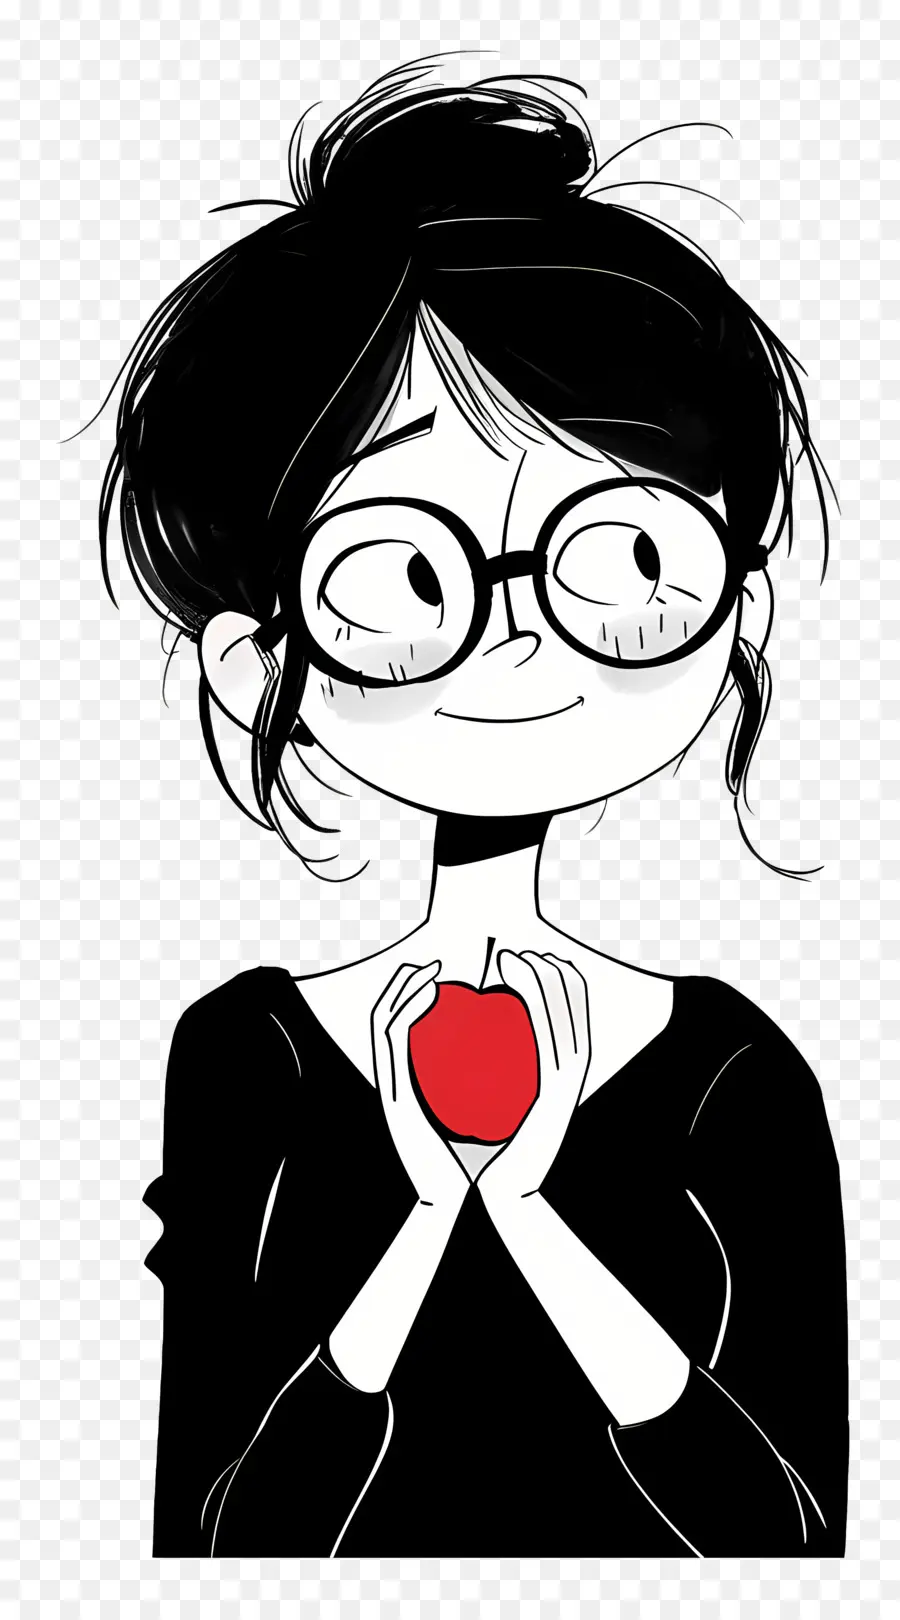 Brille - Person mit einer Brille, die Apfel in der Hand hält